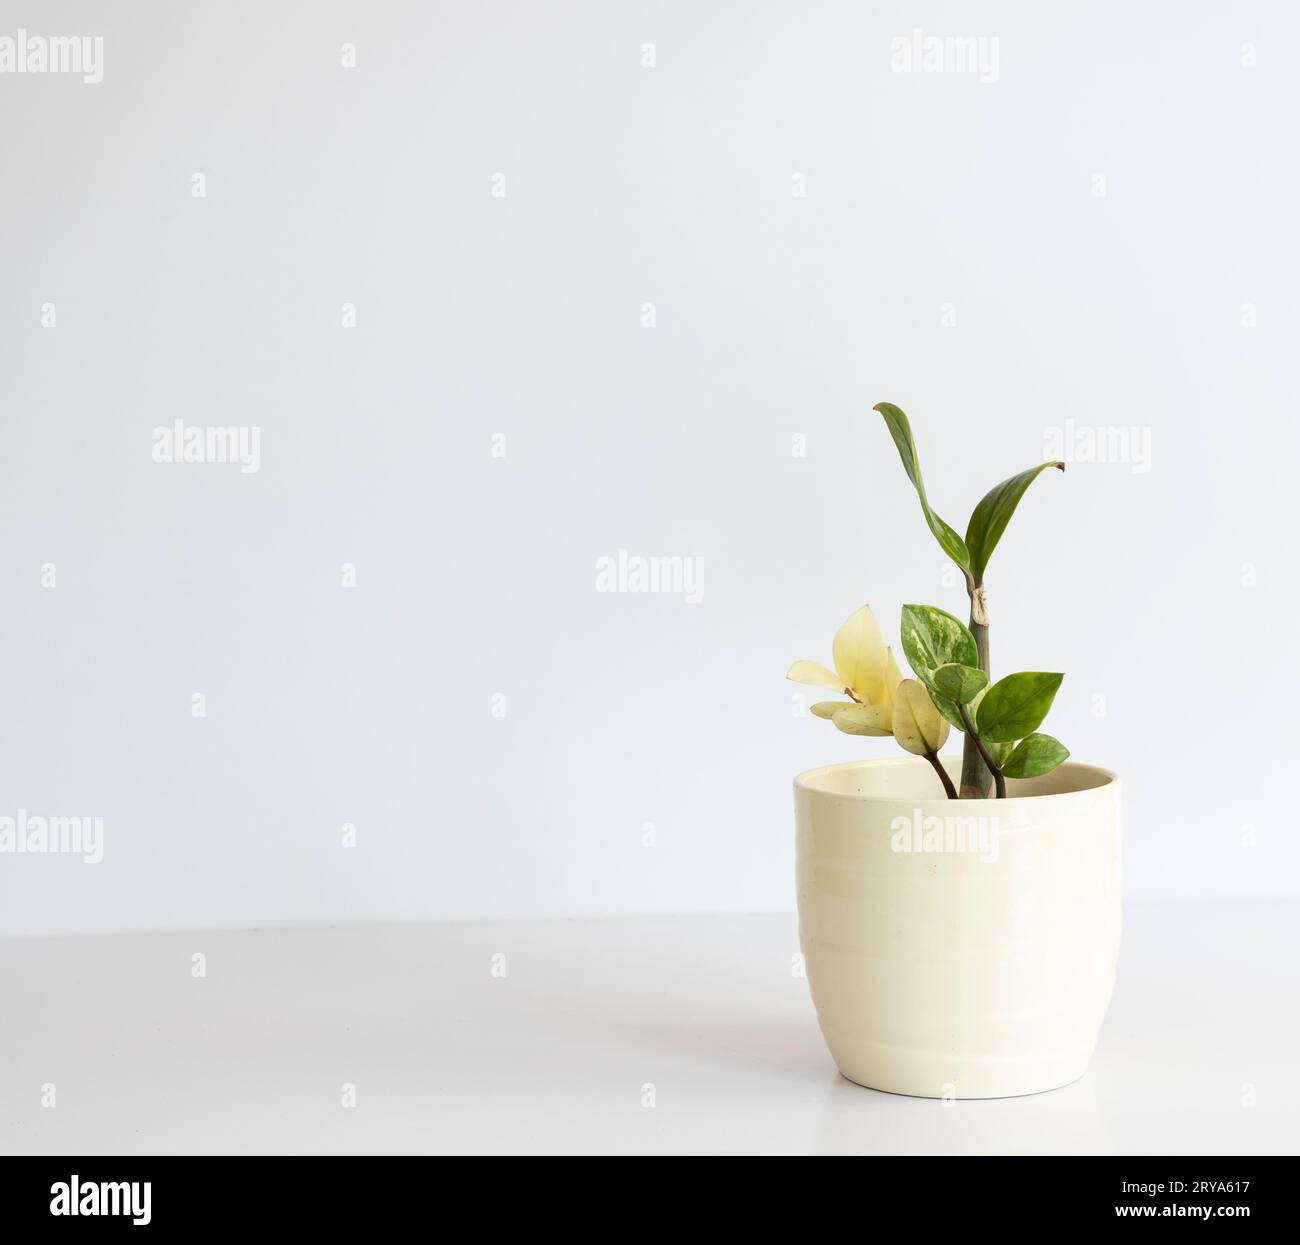 Zamioculcas zamiifolia (ZZ Plant) panifié dans un pot en céramique sur fond blanc avec espace de copie Banque D'Images